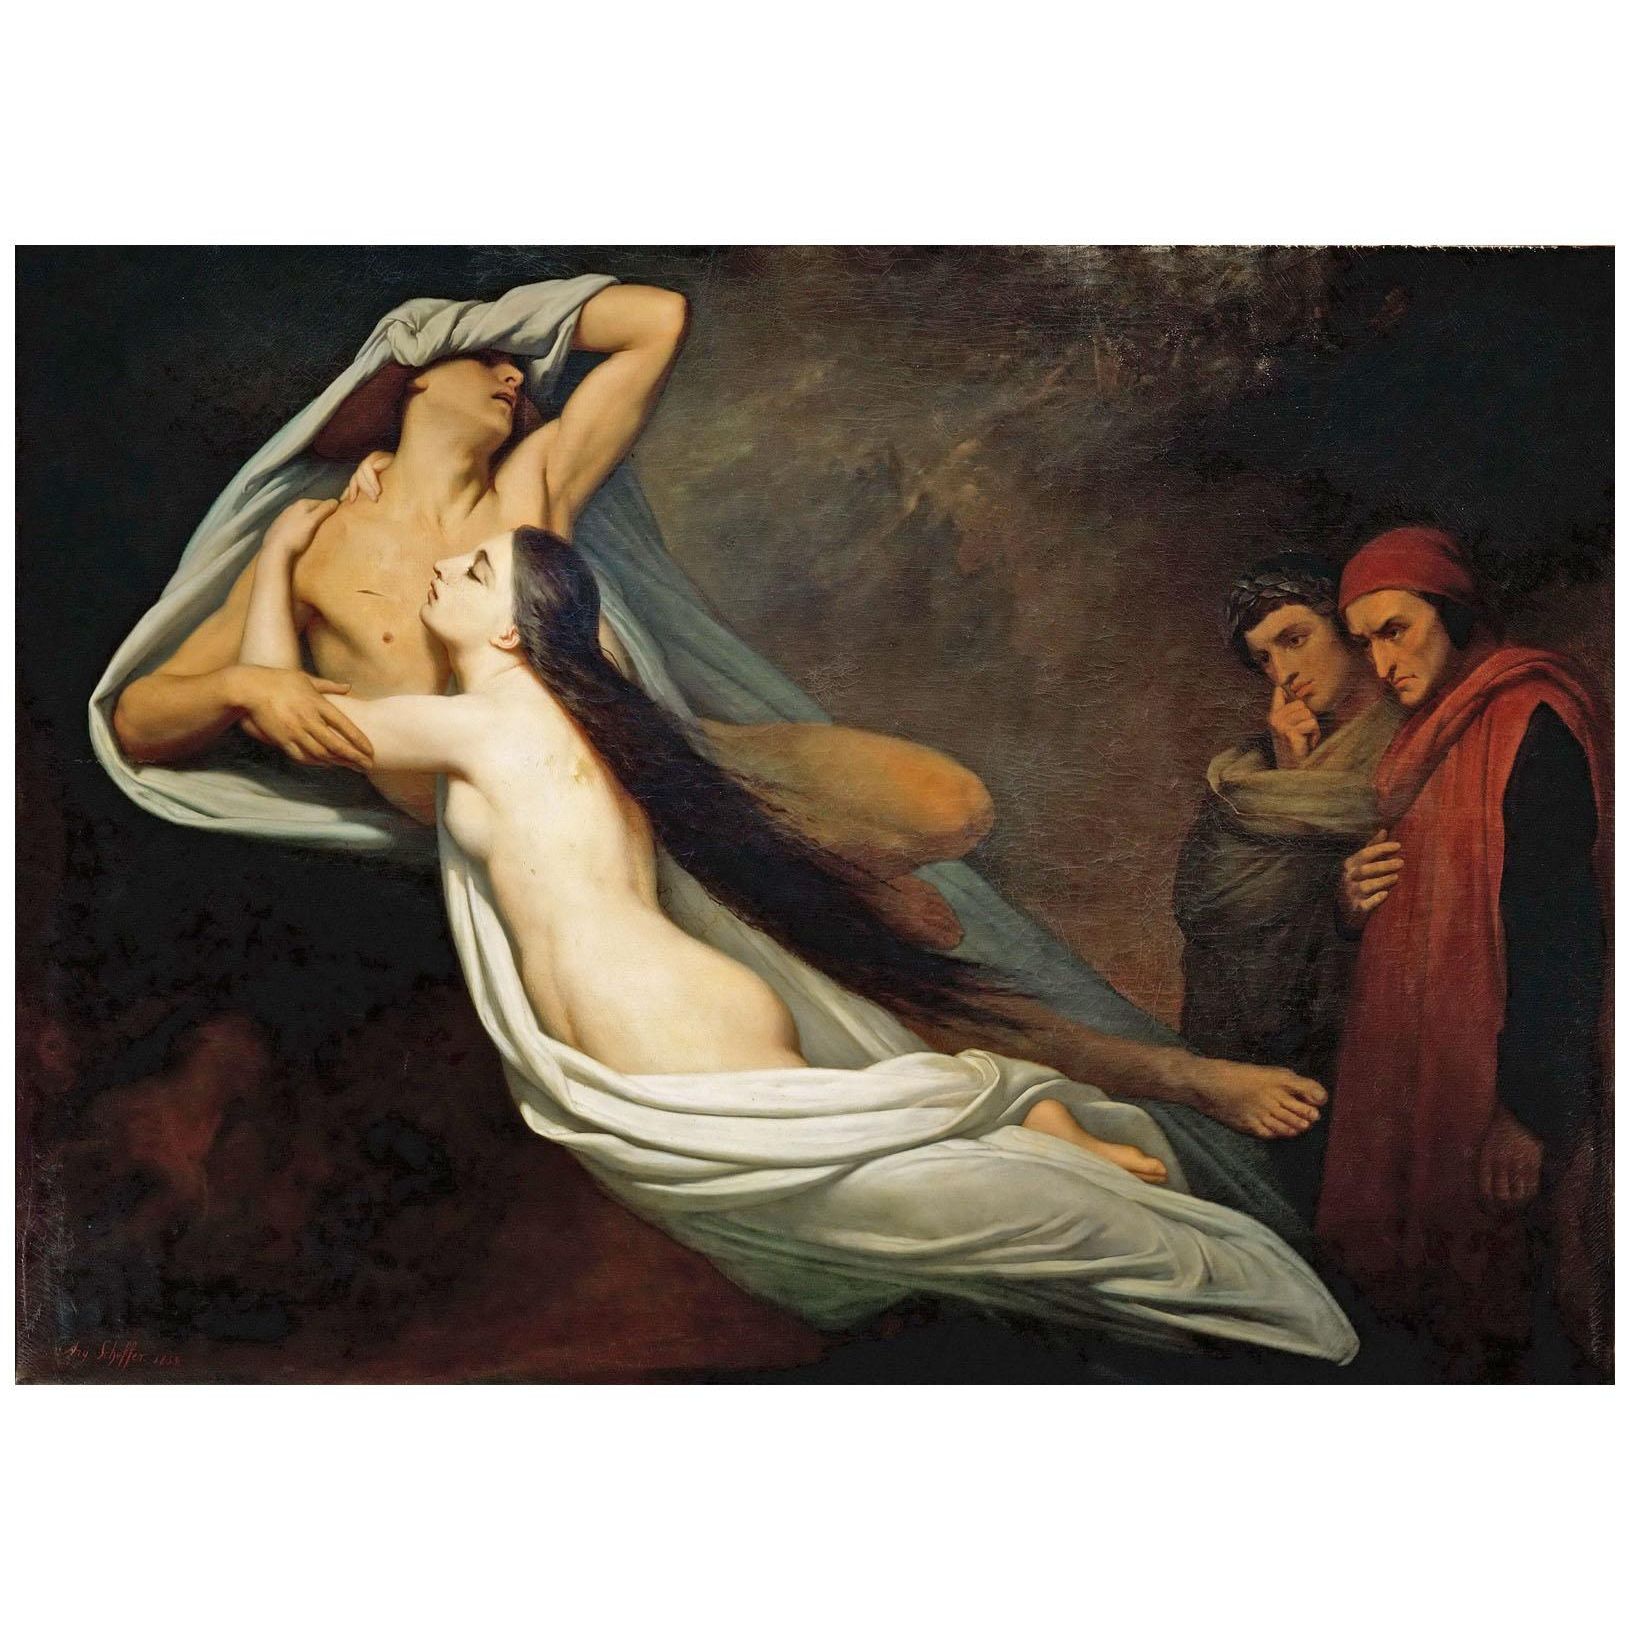 Ary Scheffer. Les ombres de Francesca et de Paolo. 1855. Louvre